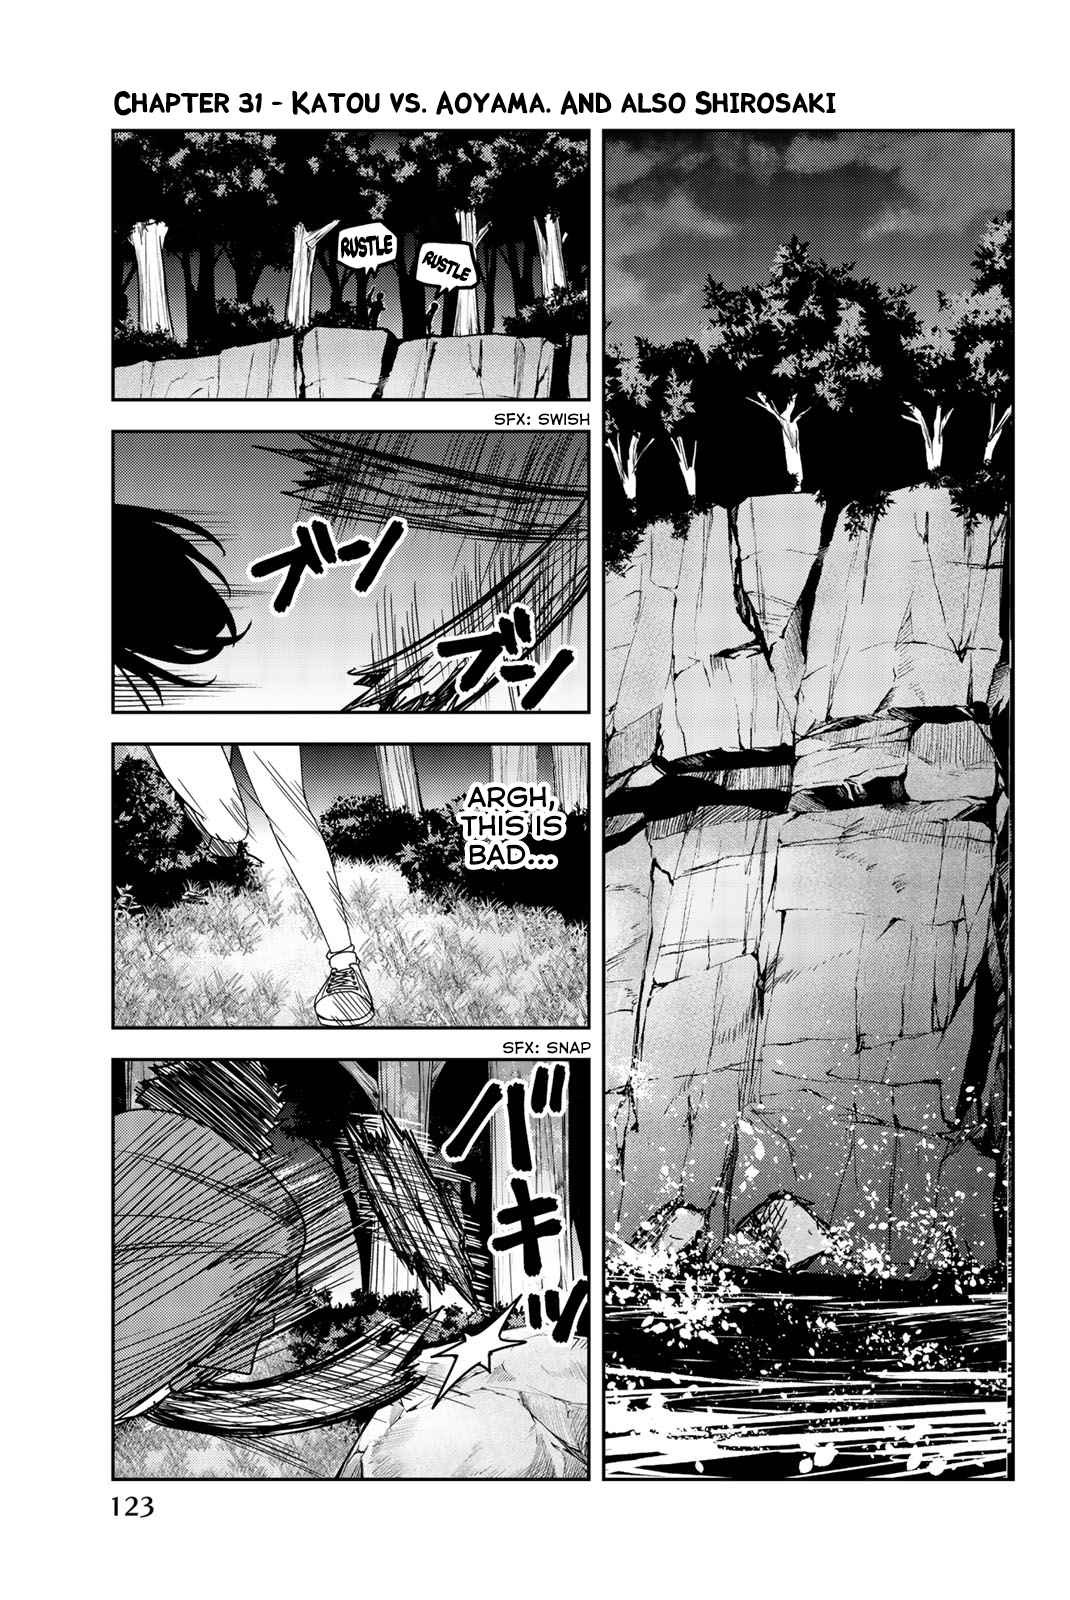 Ijimeru Yabai Yatsu Vol. 3 Ch. 31 Katou vs. Aoyama. And Also Shirosaki